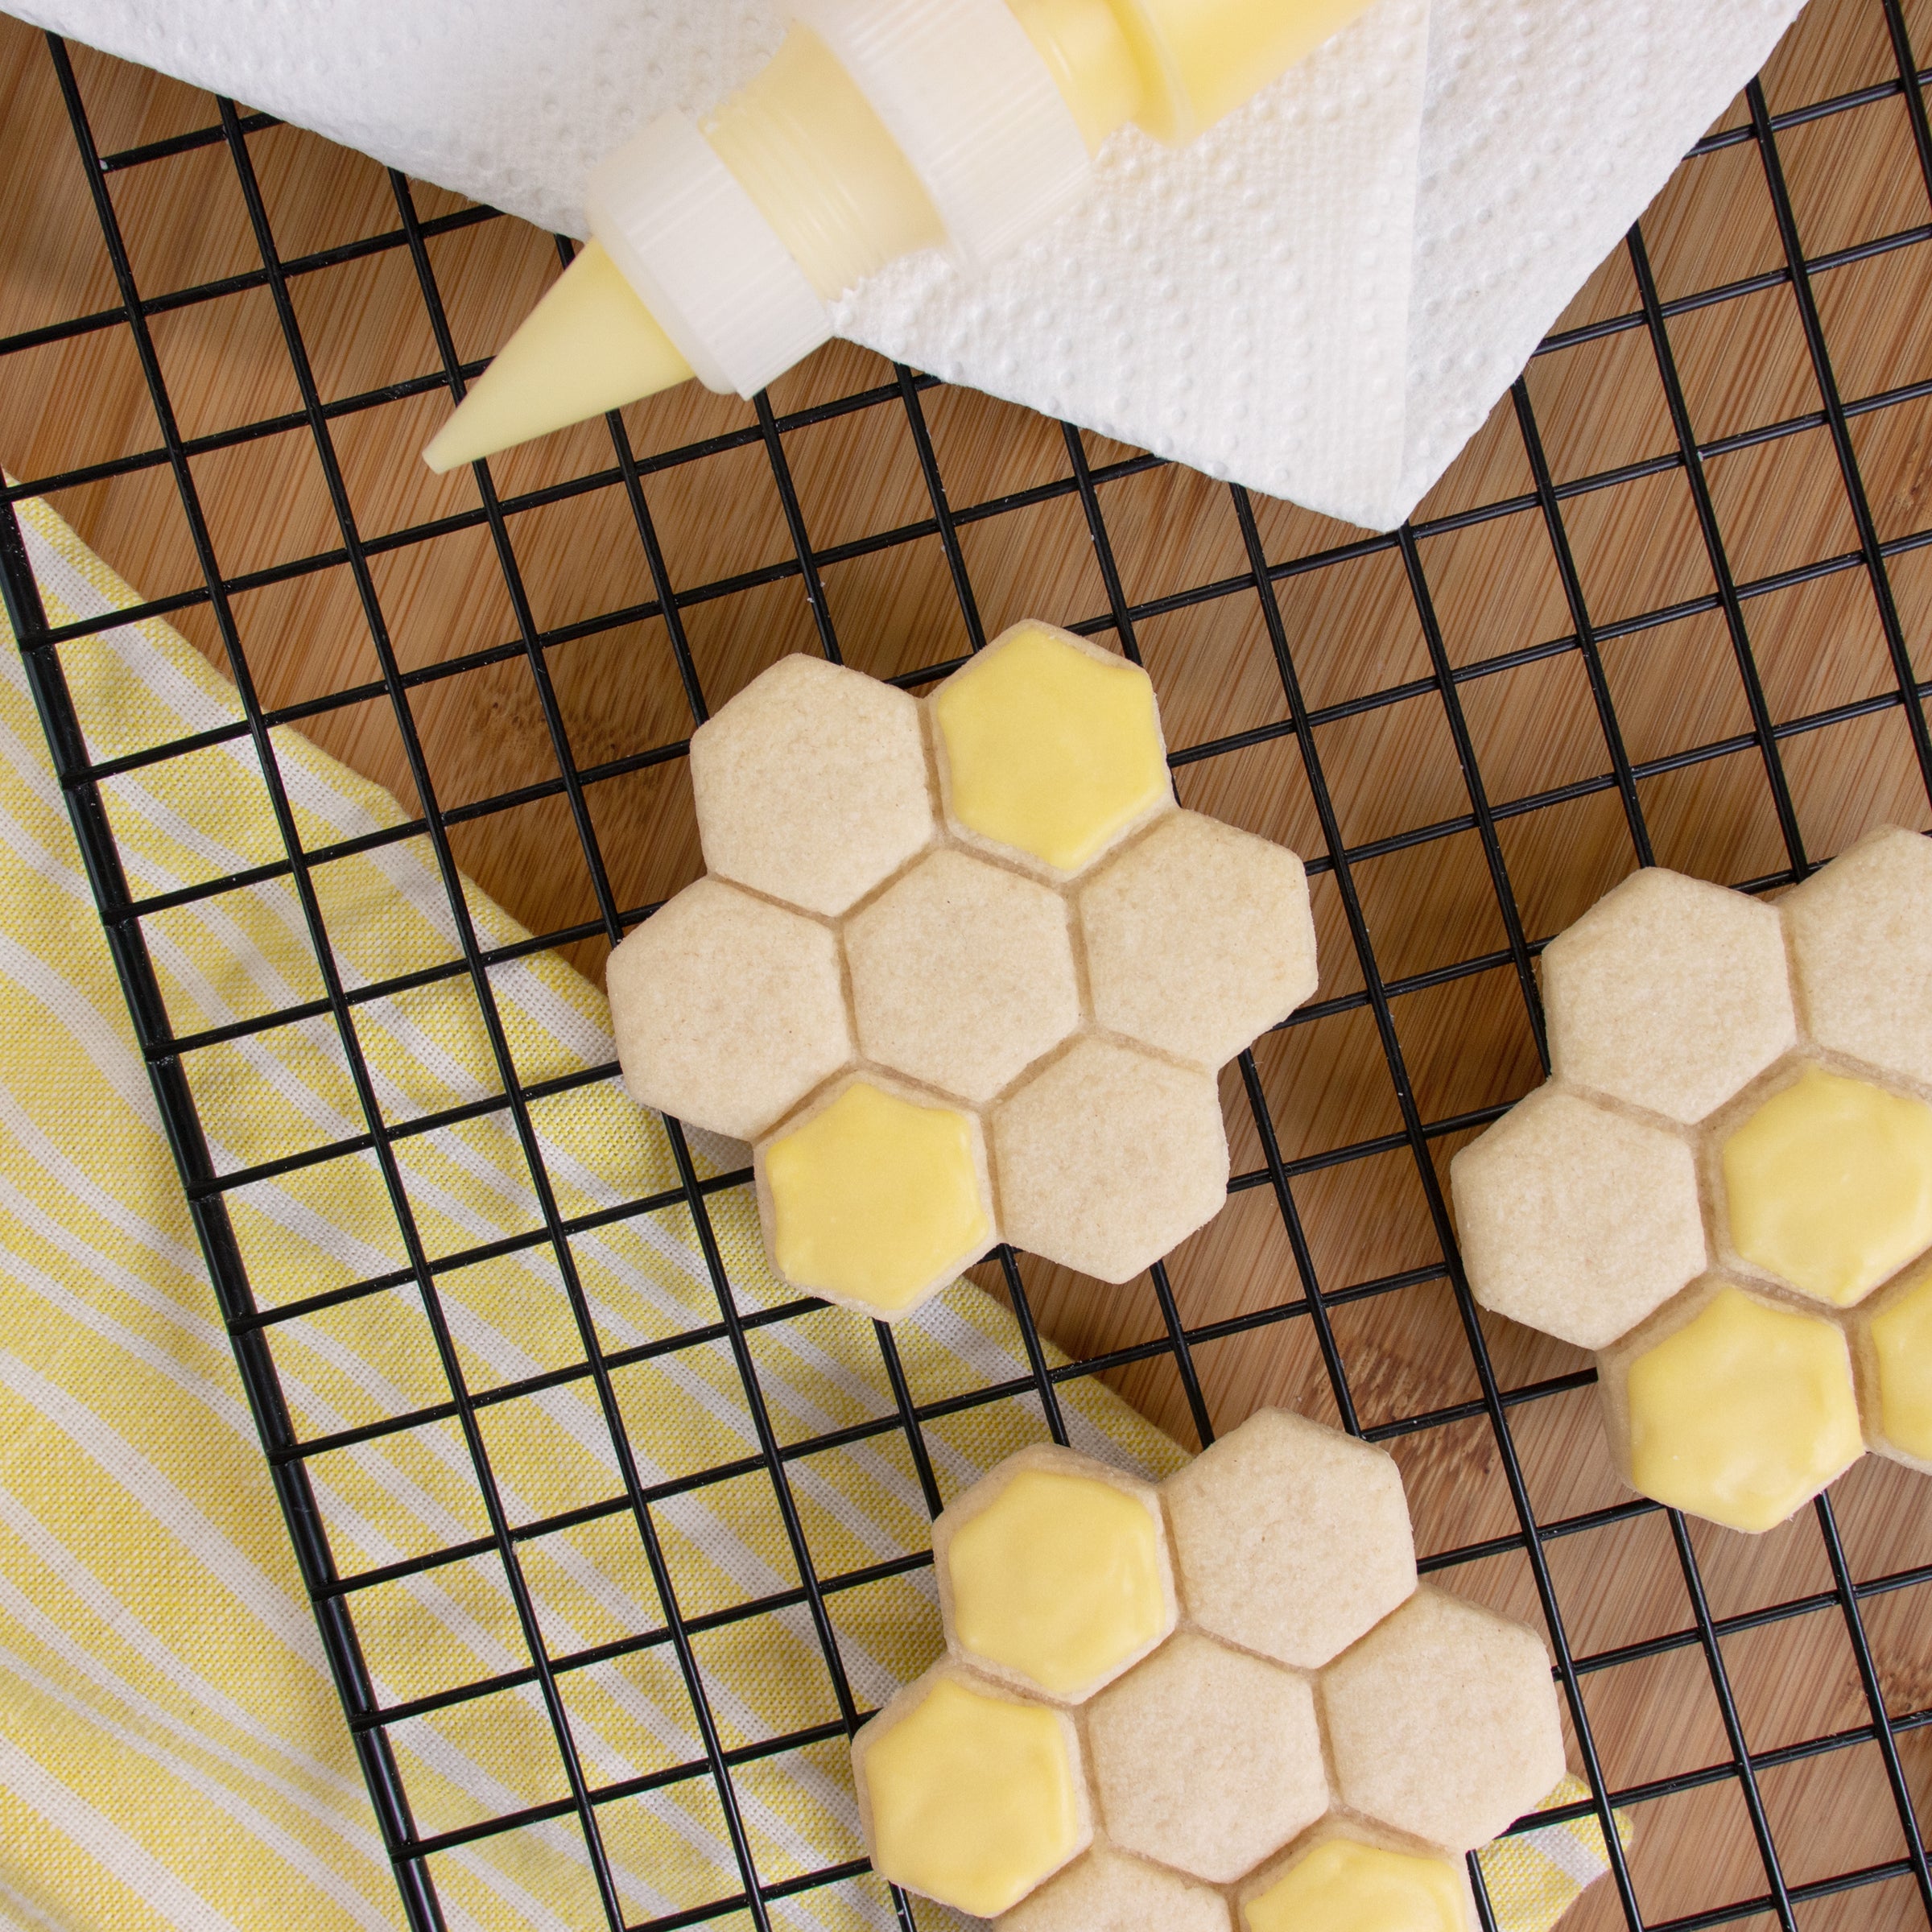 Honeycomb cookies